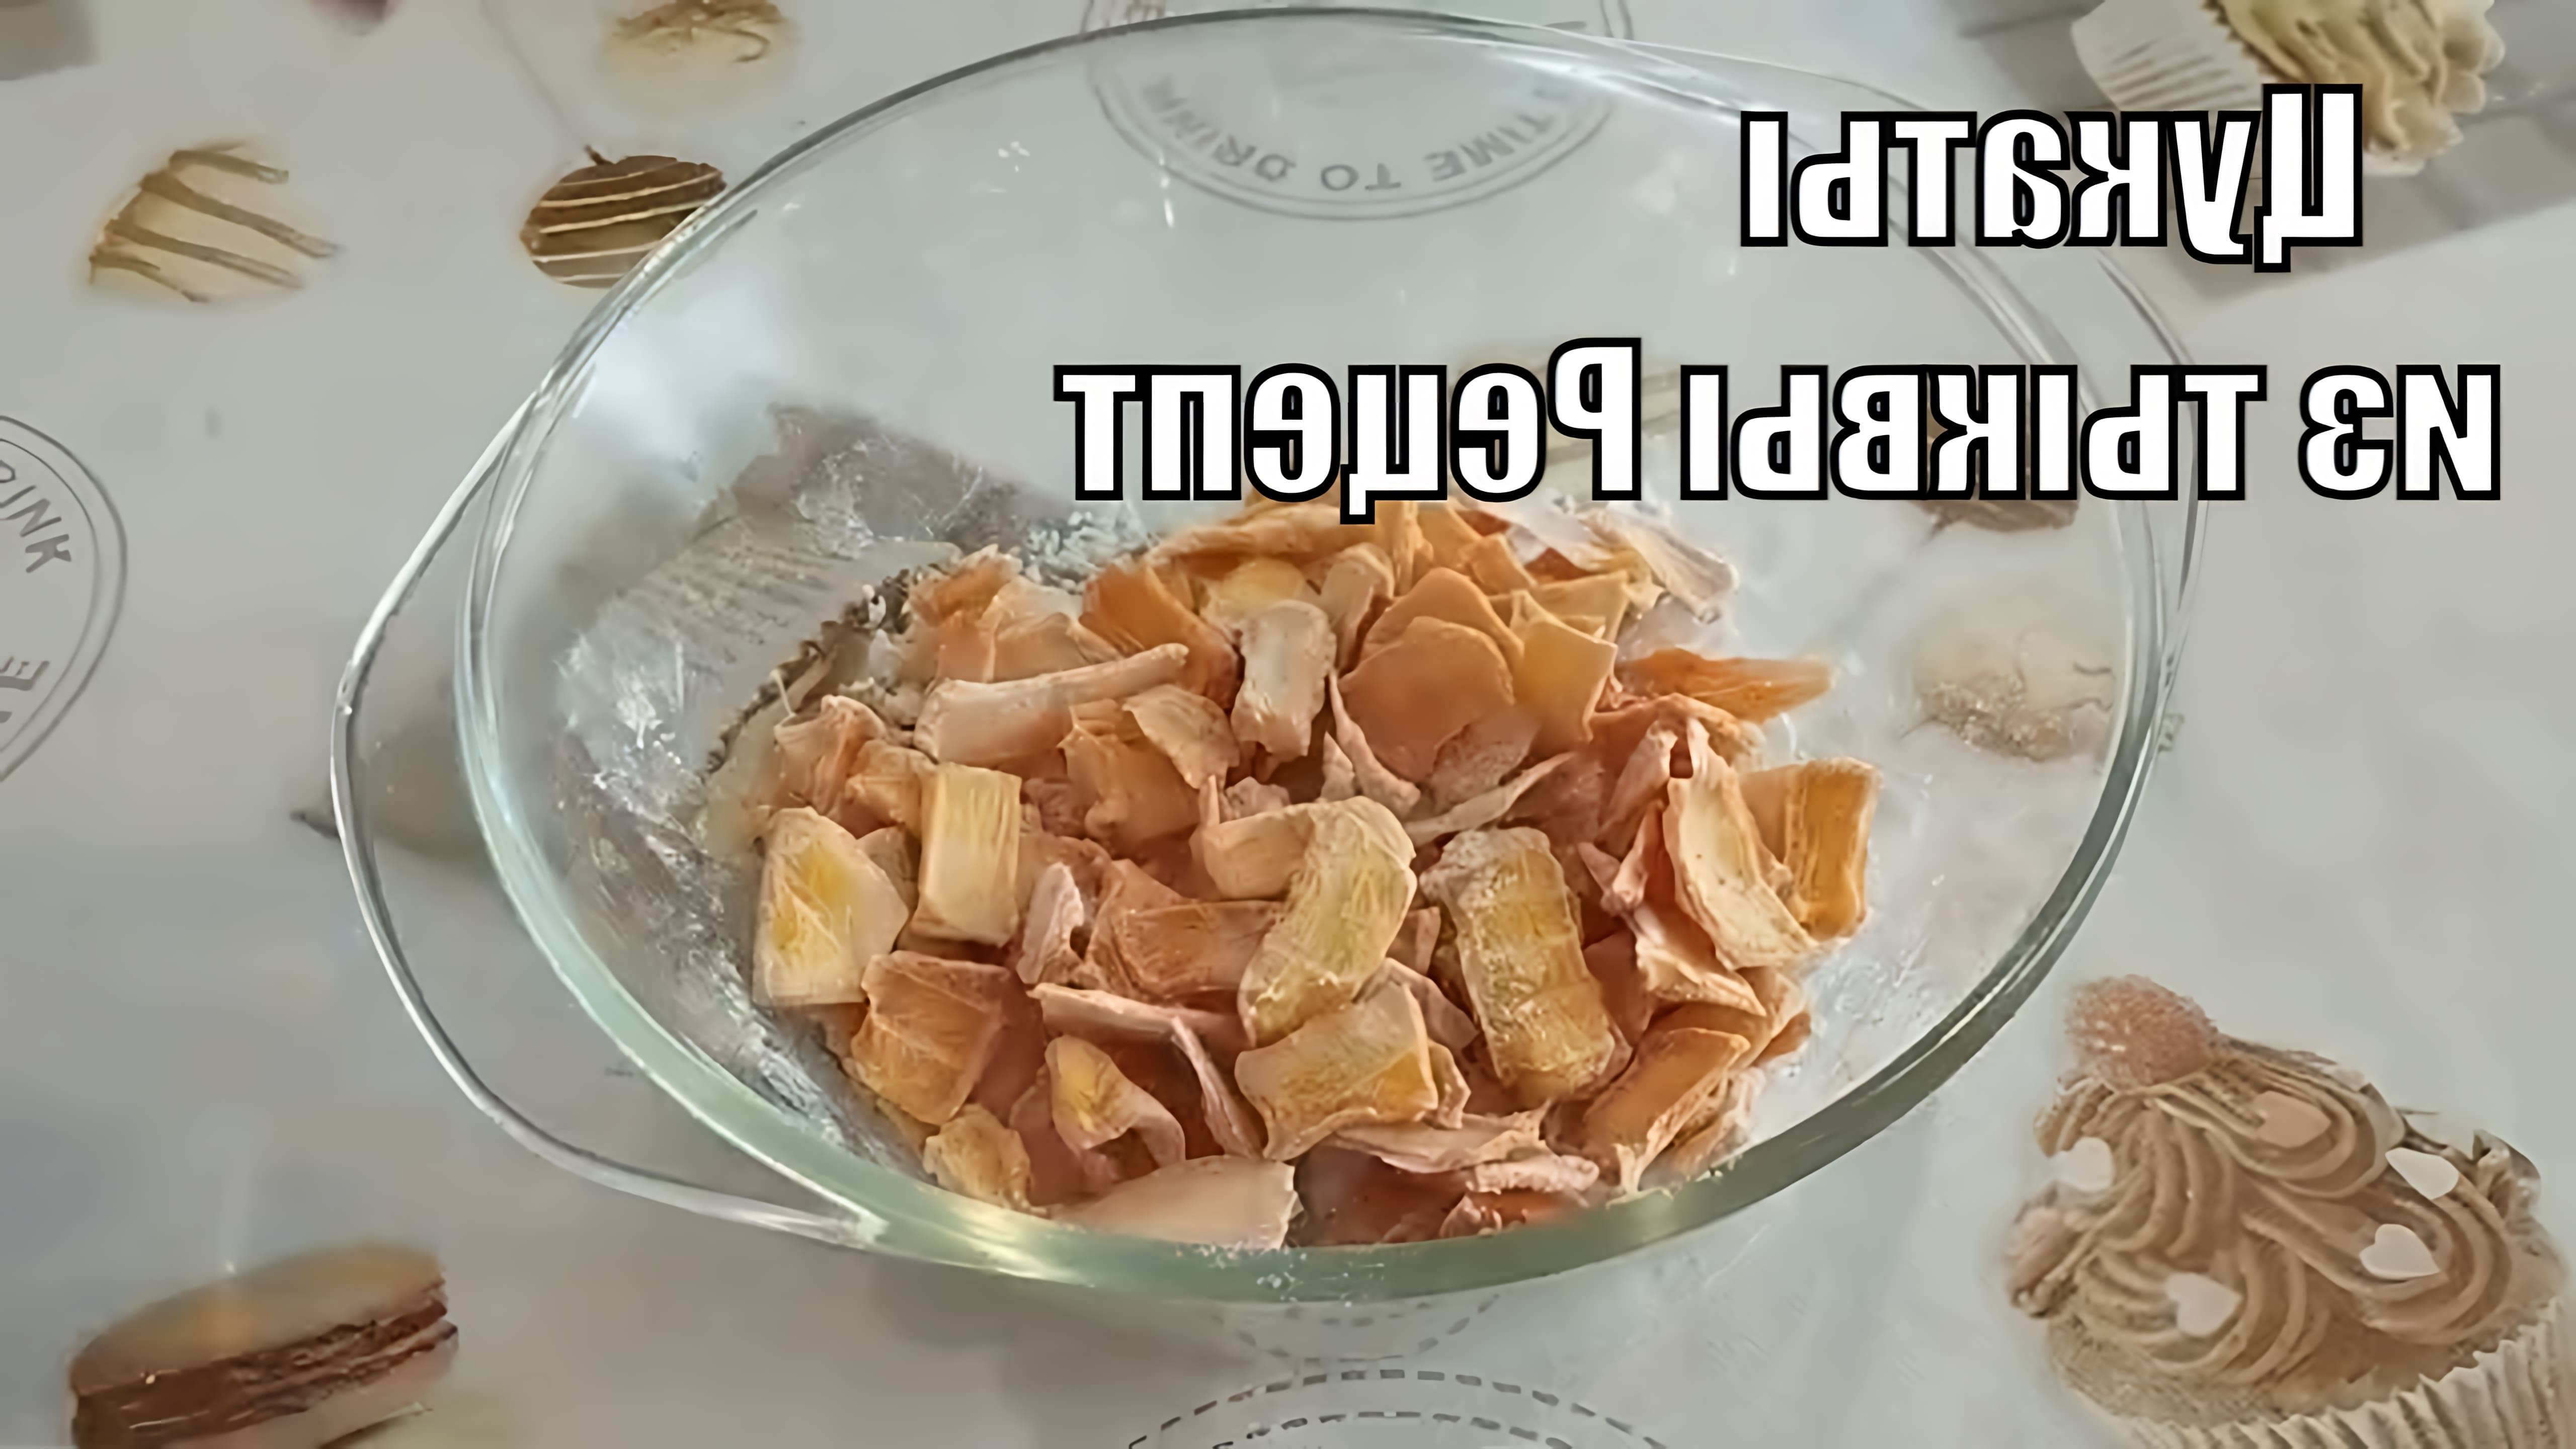 В данном видео демонстрируется процесс приготовления цукатов из тыквы в домашних условиях